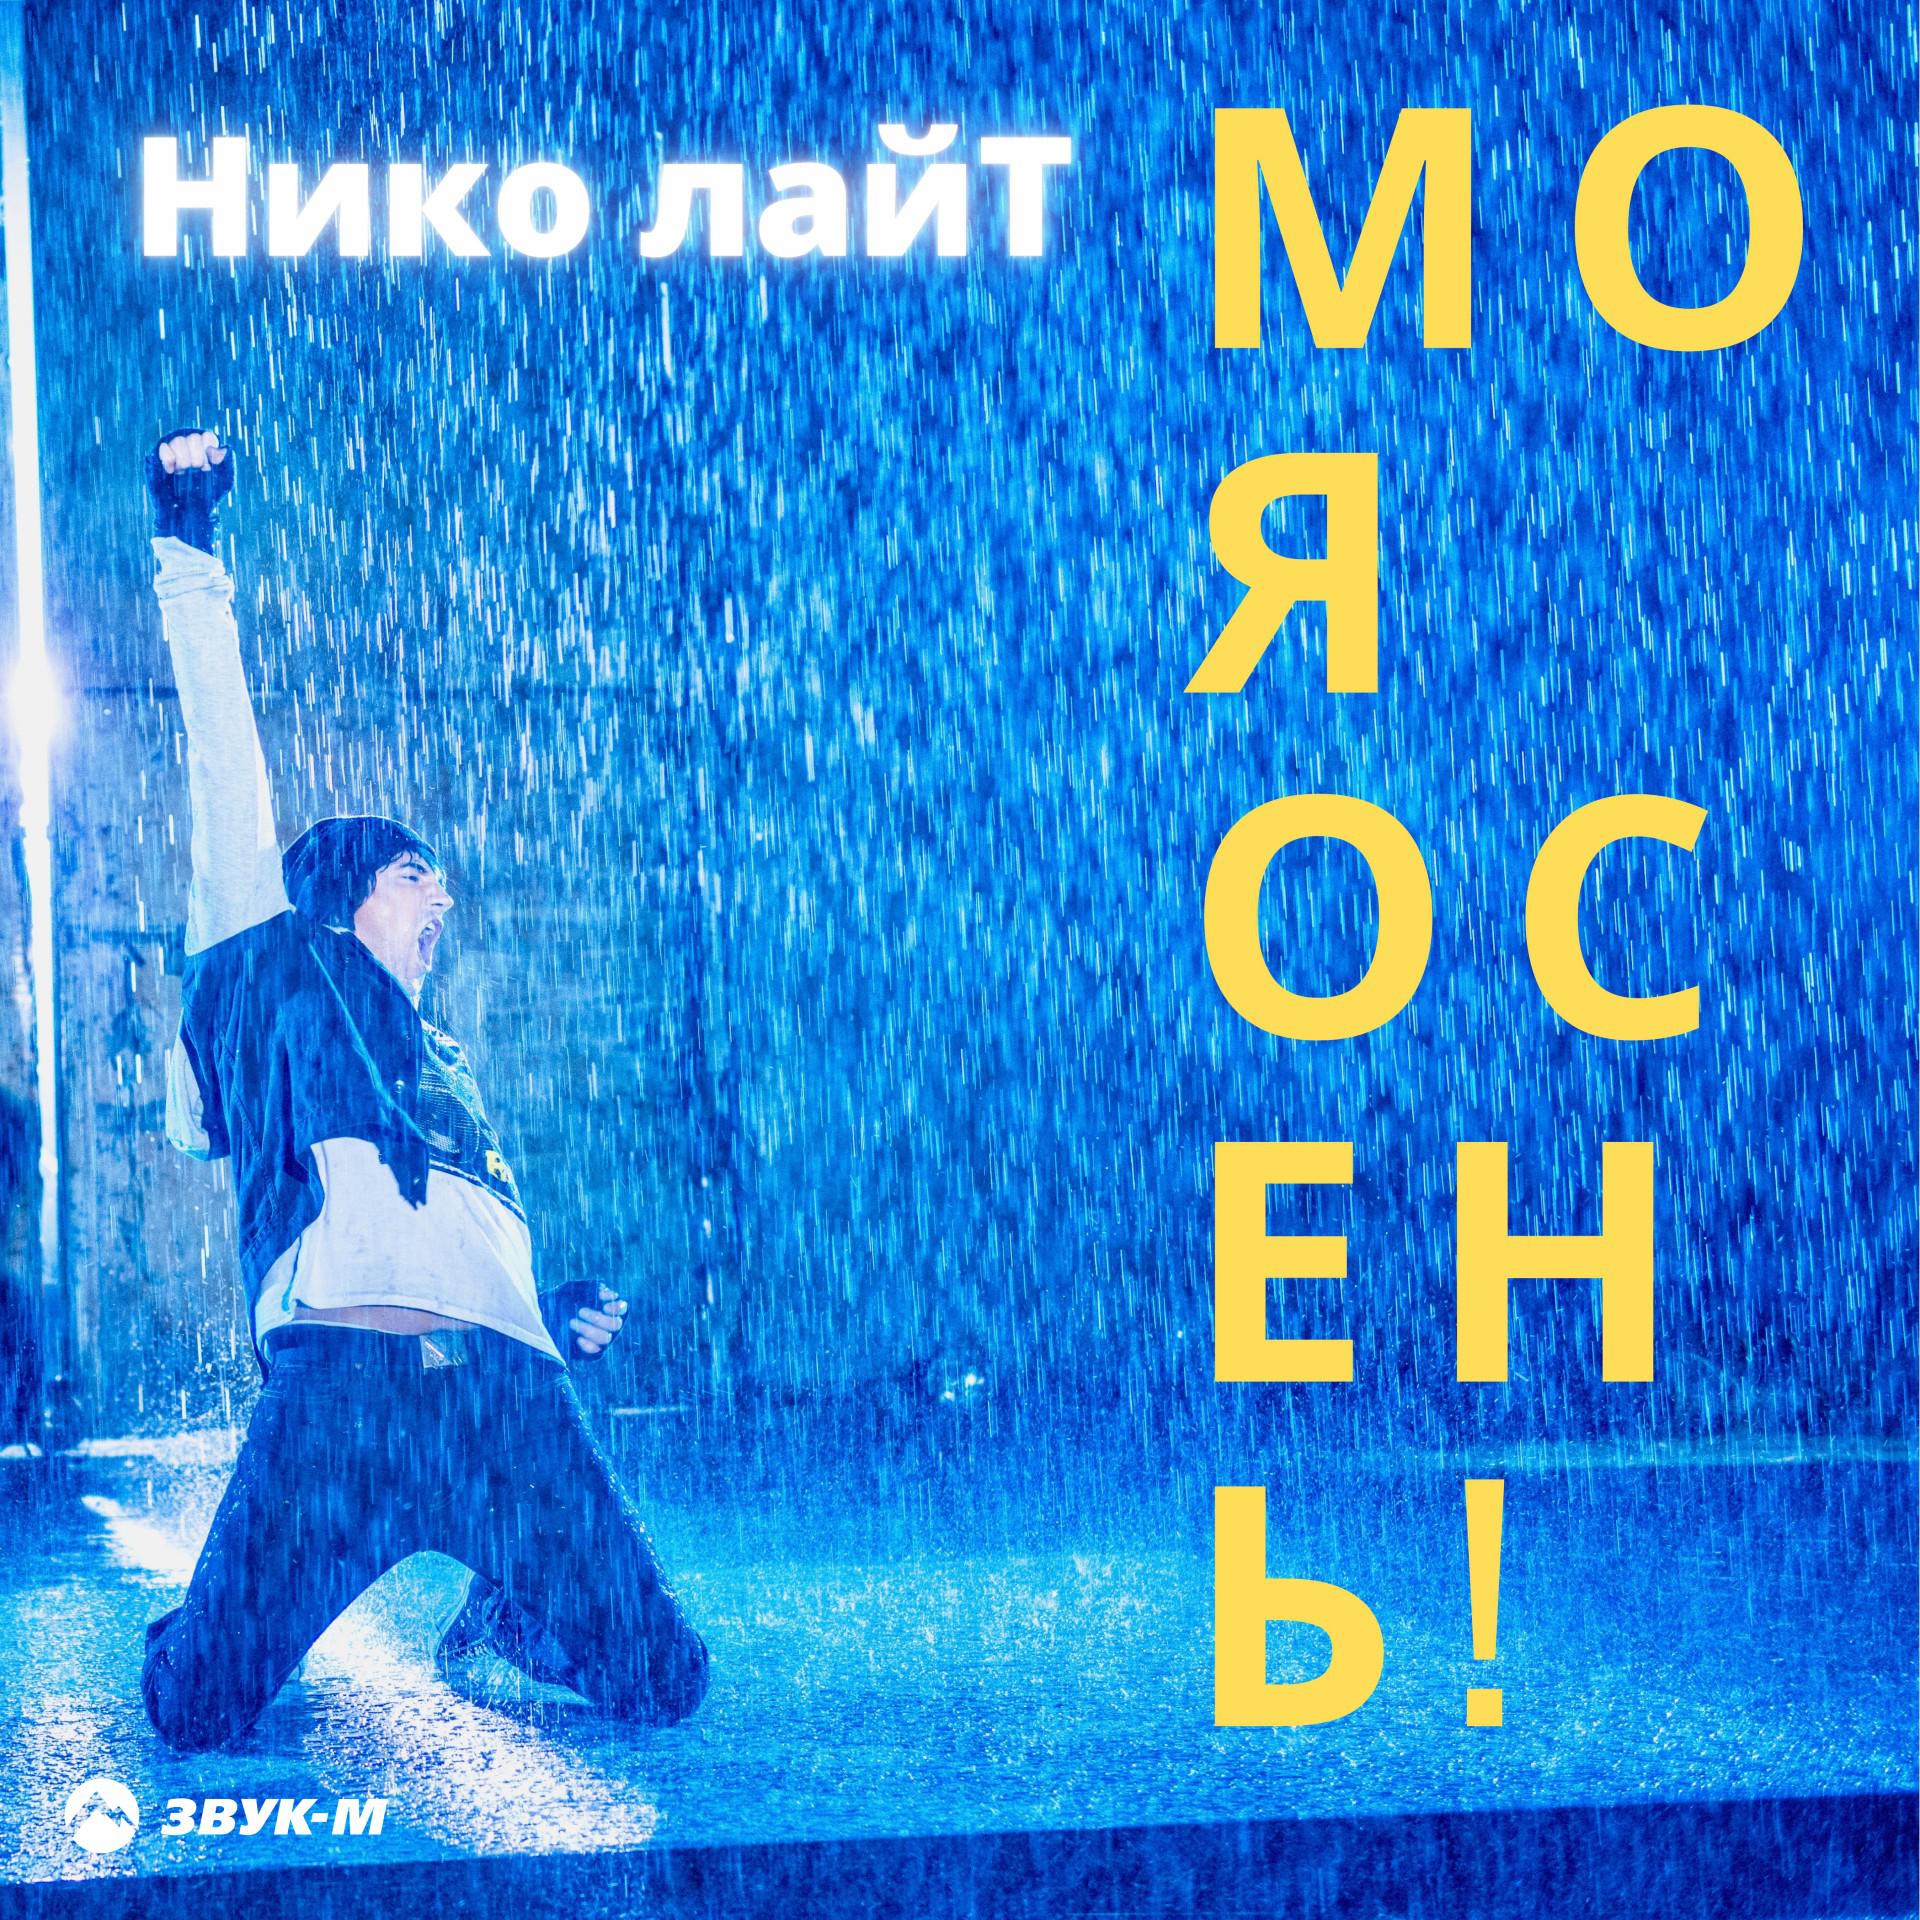 Нико лайТ - Моя осень! (DJ Noiz Remix)